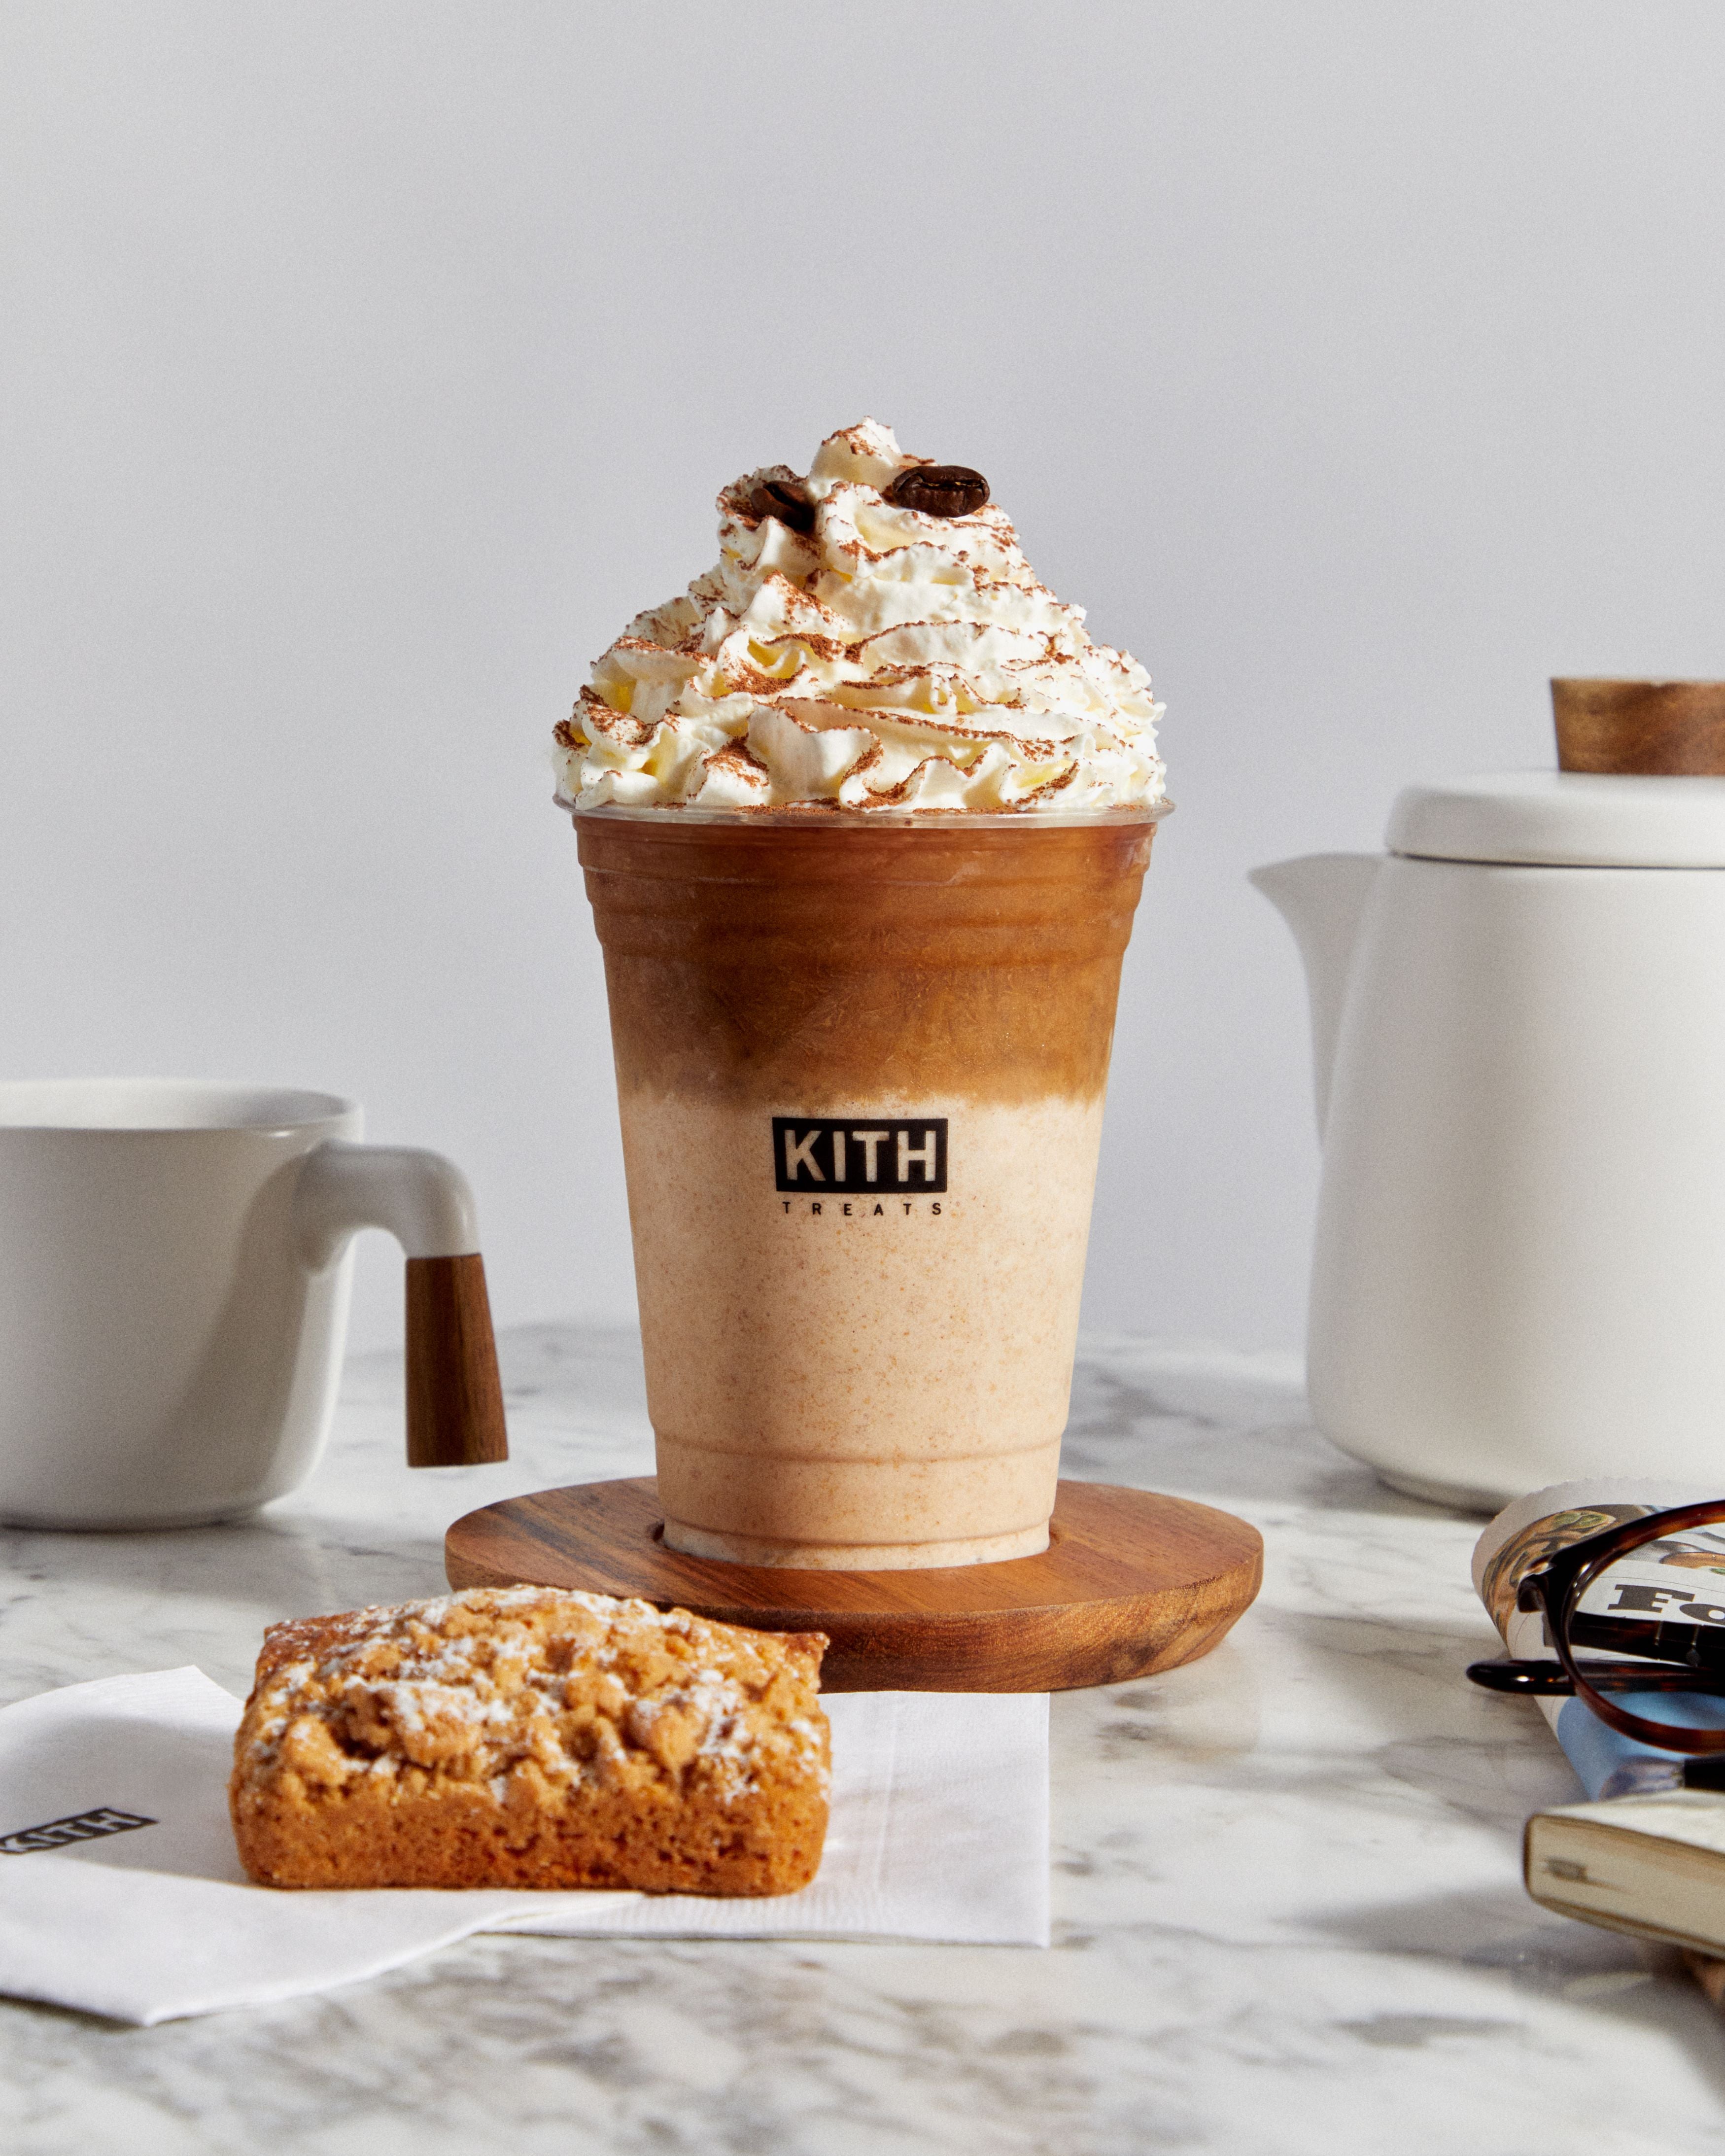 Treats Coffee – Kith